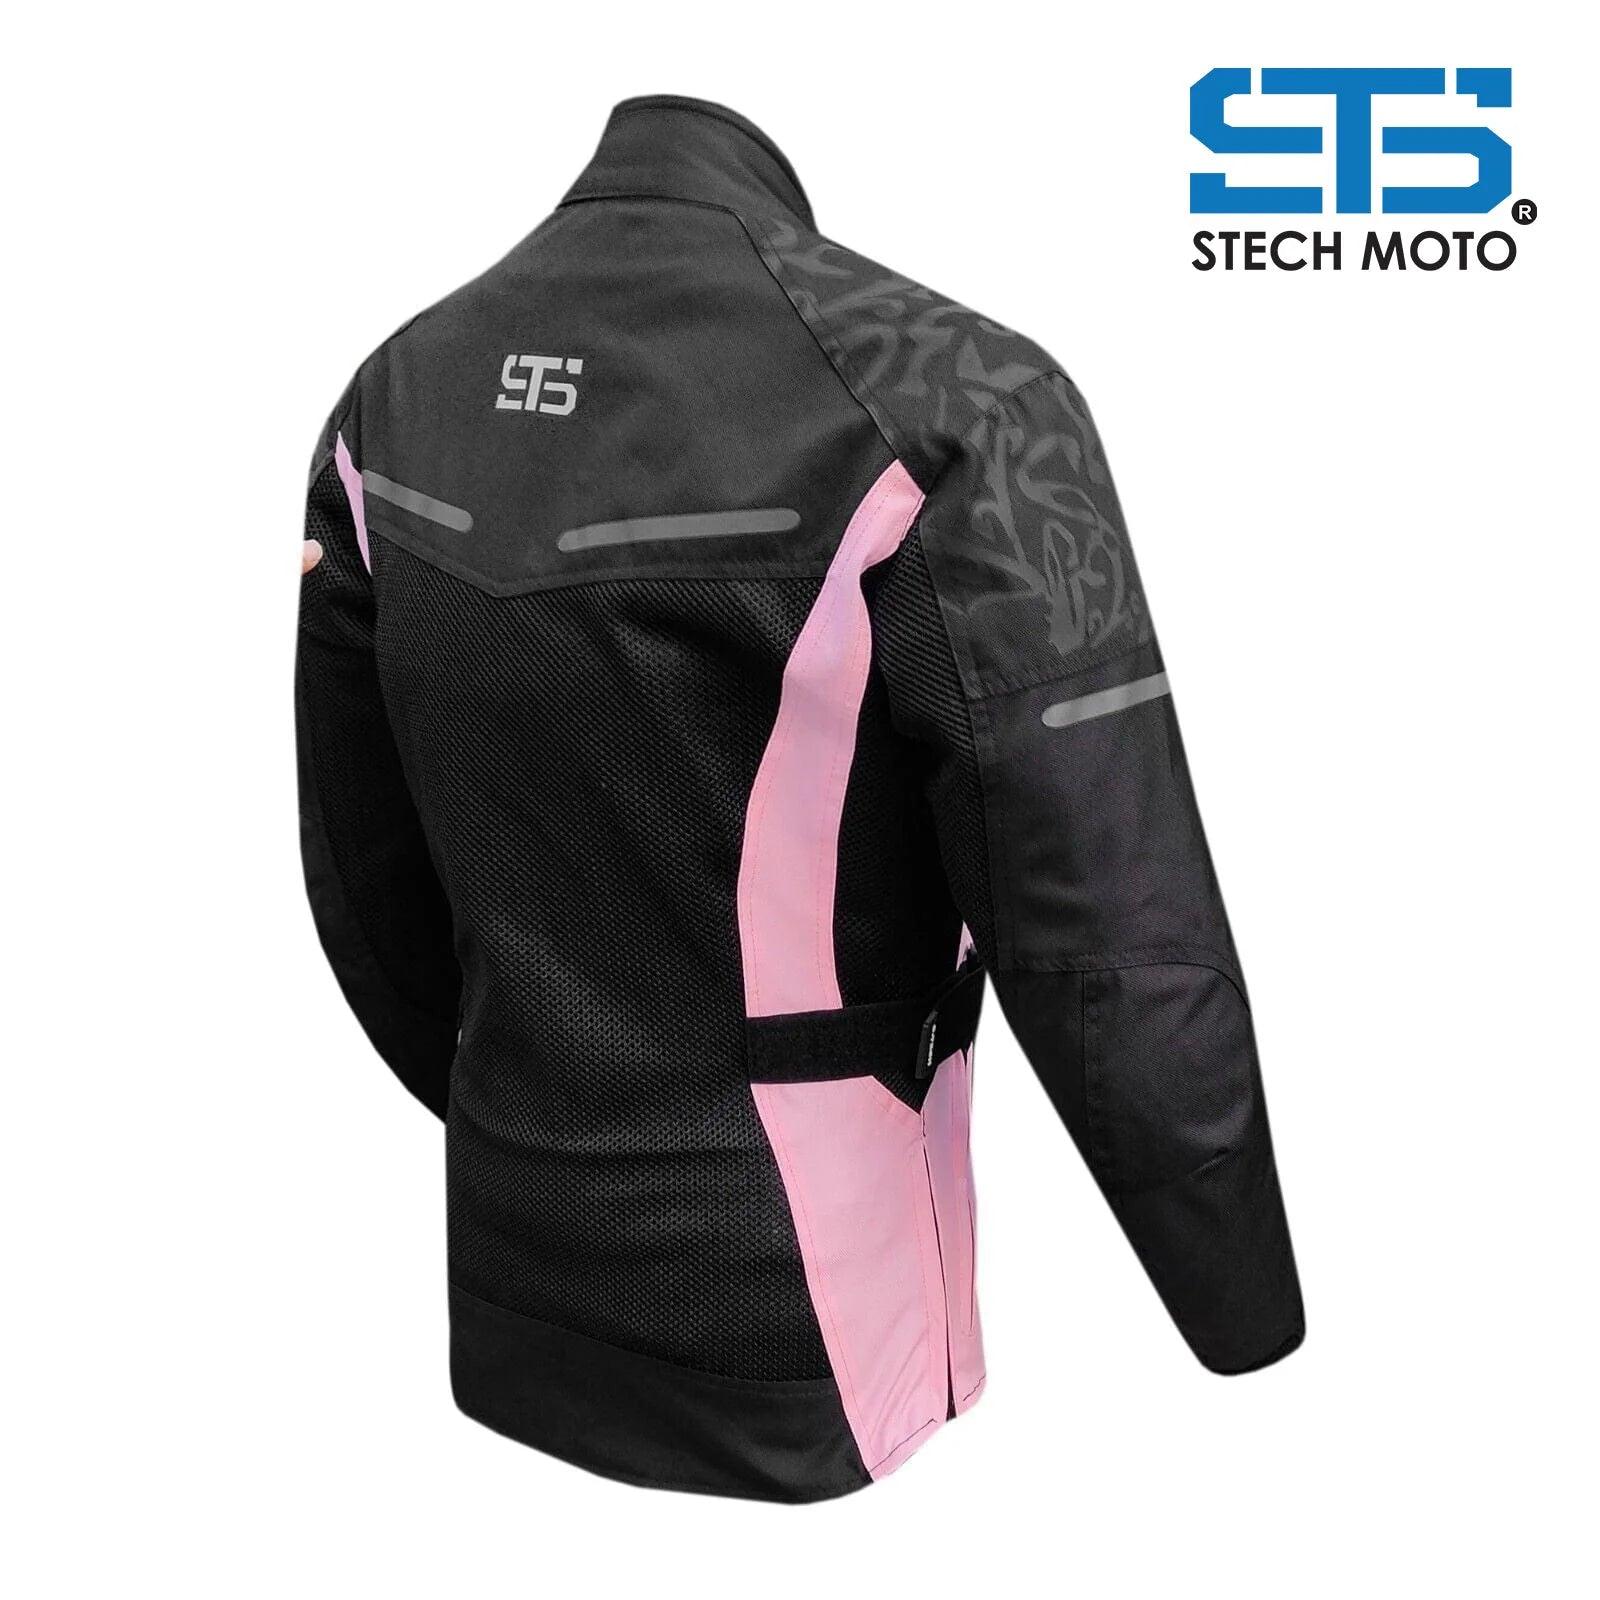 Moto giacca estiva in tessuto da donna Stechmoto ST 001 AIR H2Out e 2 strati - Am Moto-Abbigliamento Moto